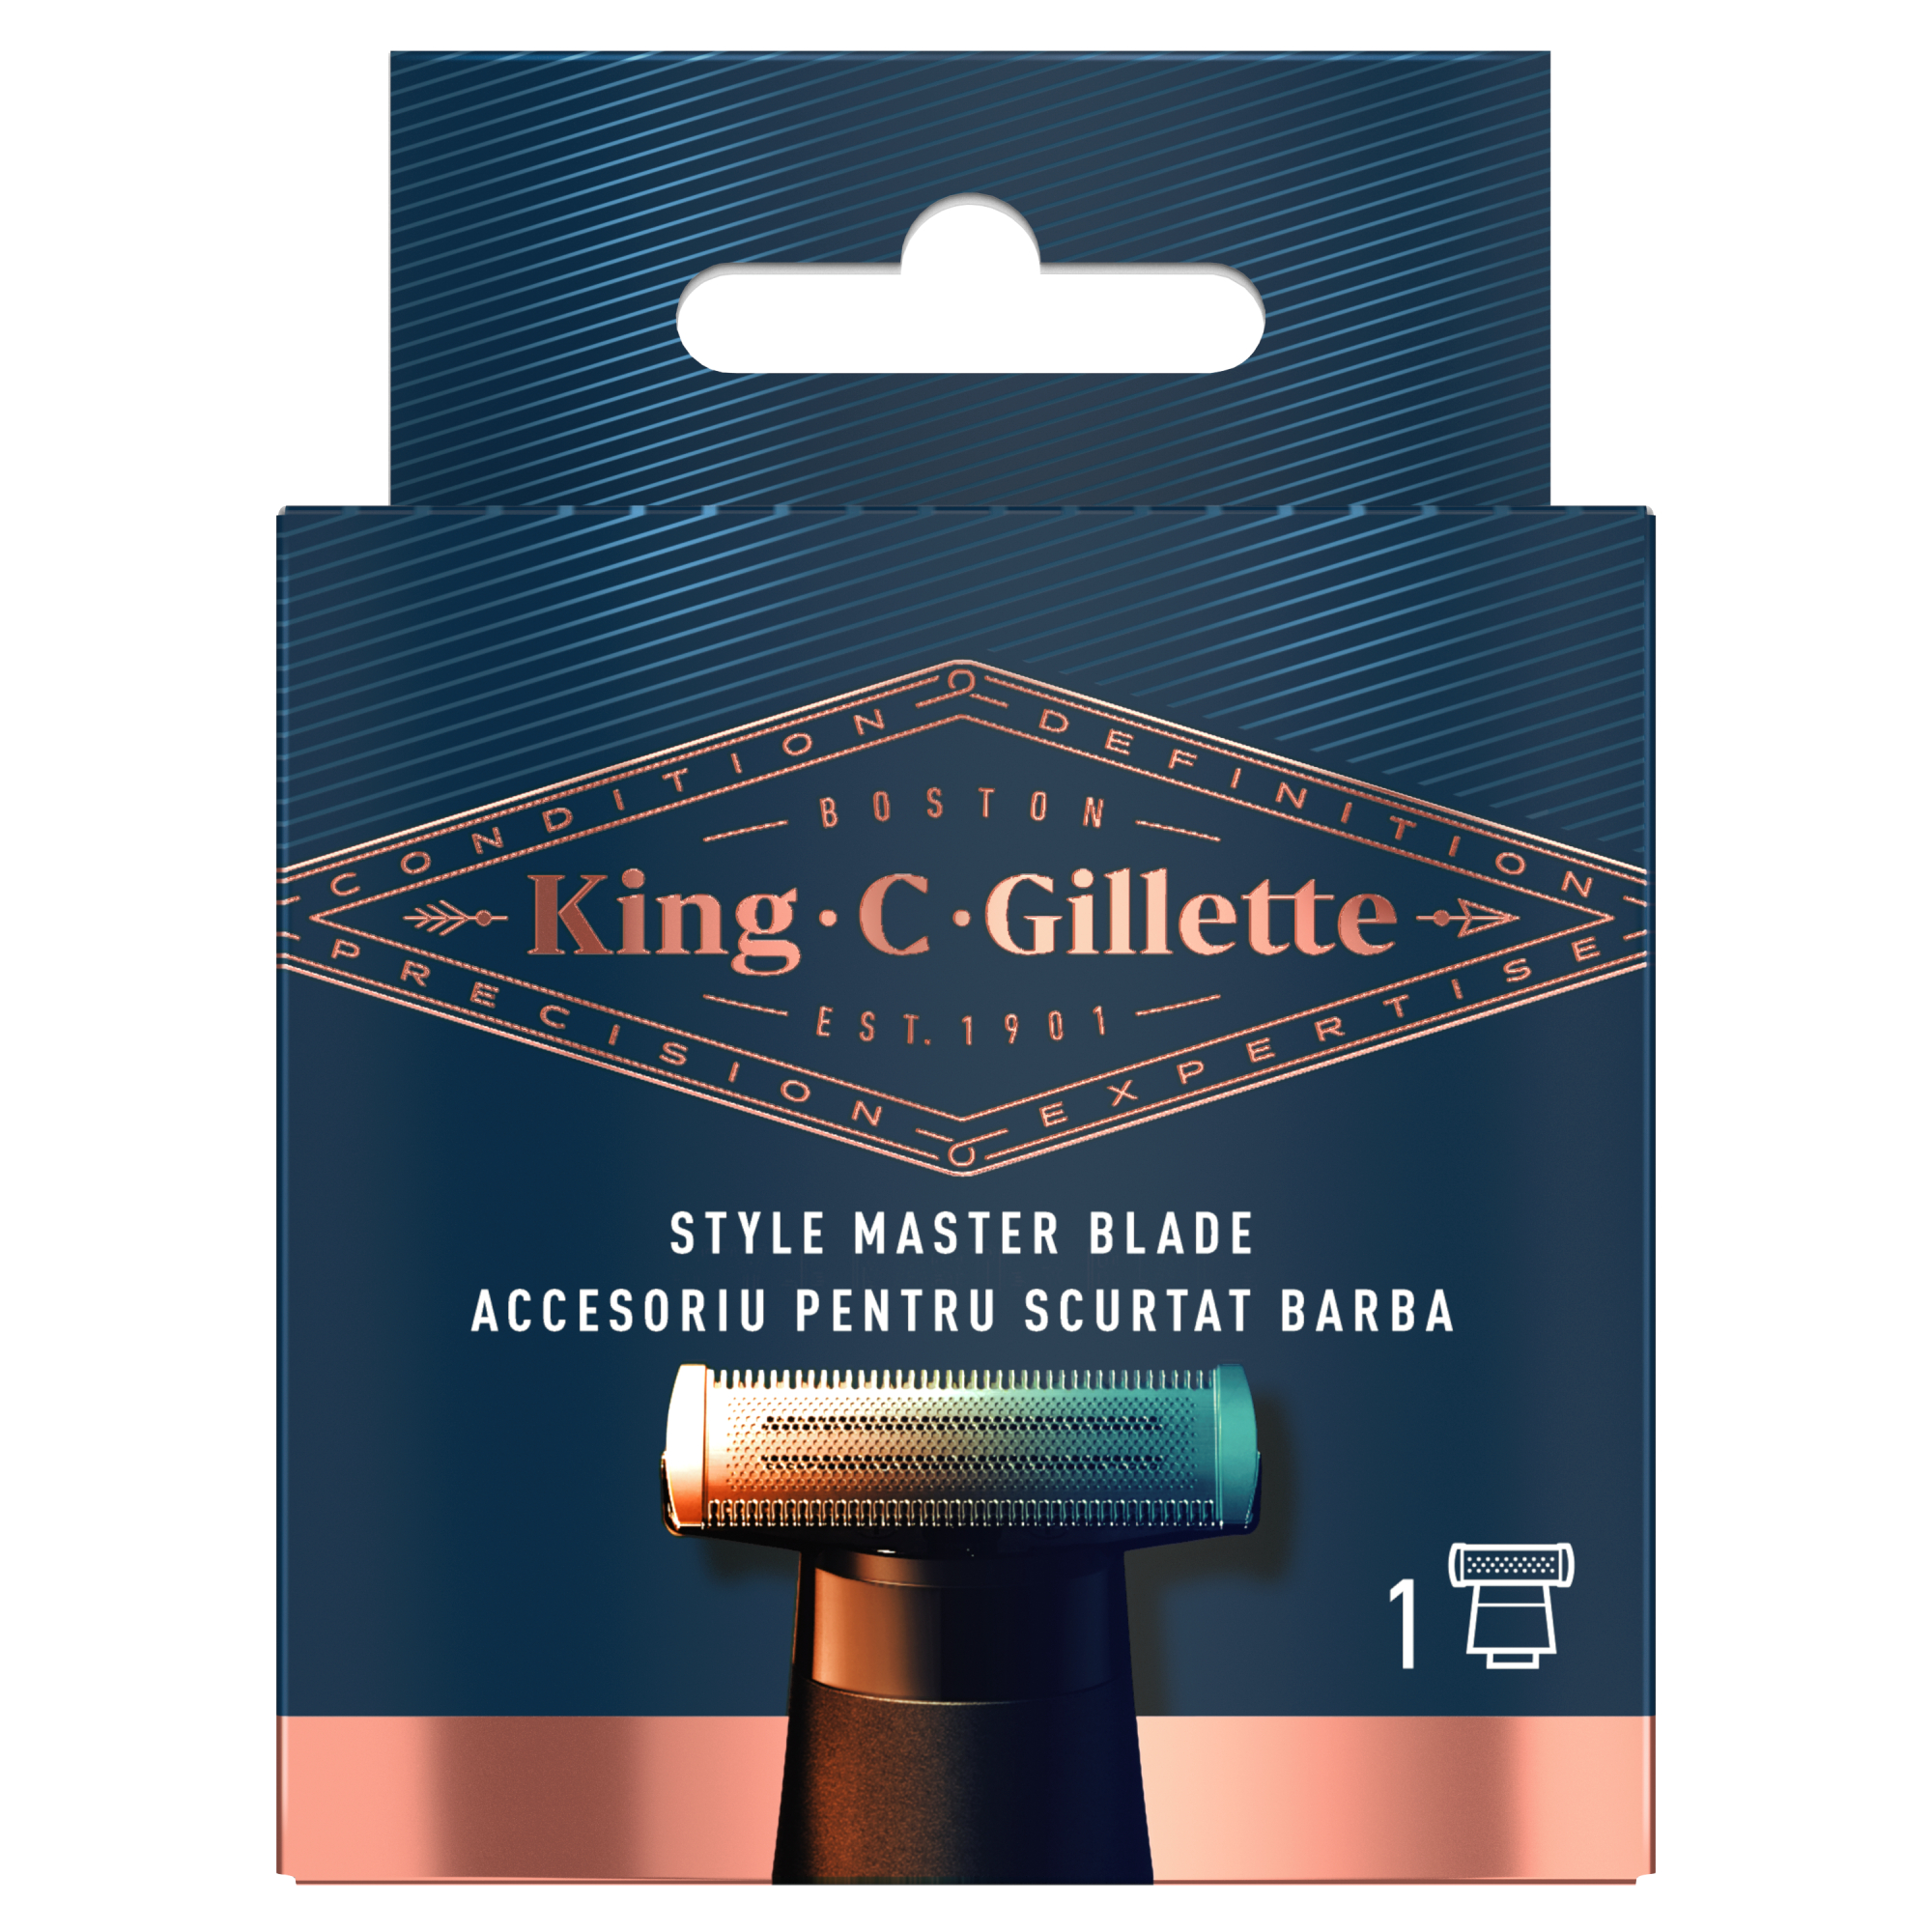 Сменное металлическое лезвие к триммеру King C. Gillette Style Master с 4D-технологией для точного стайлинга